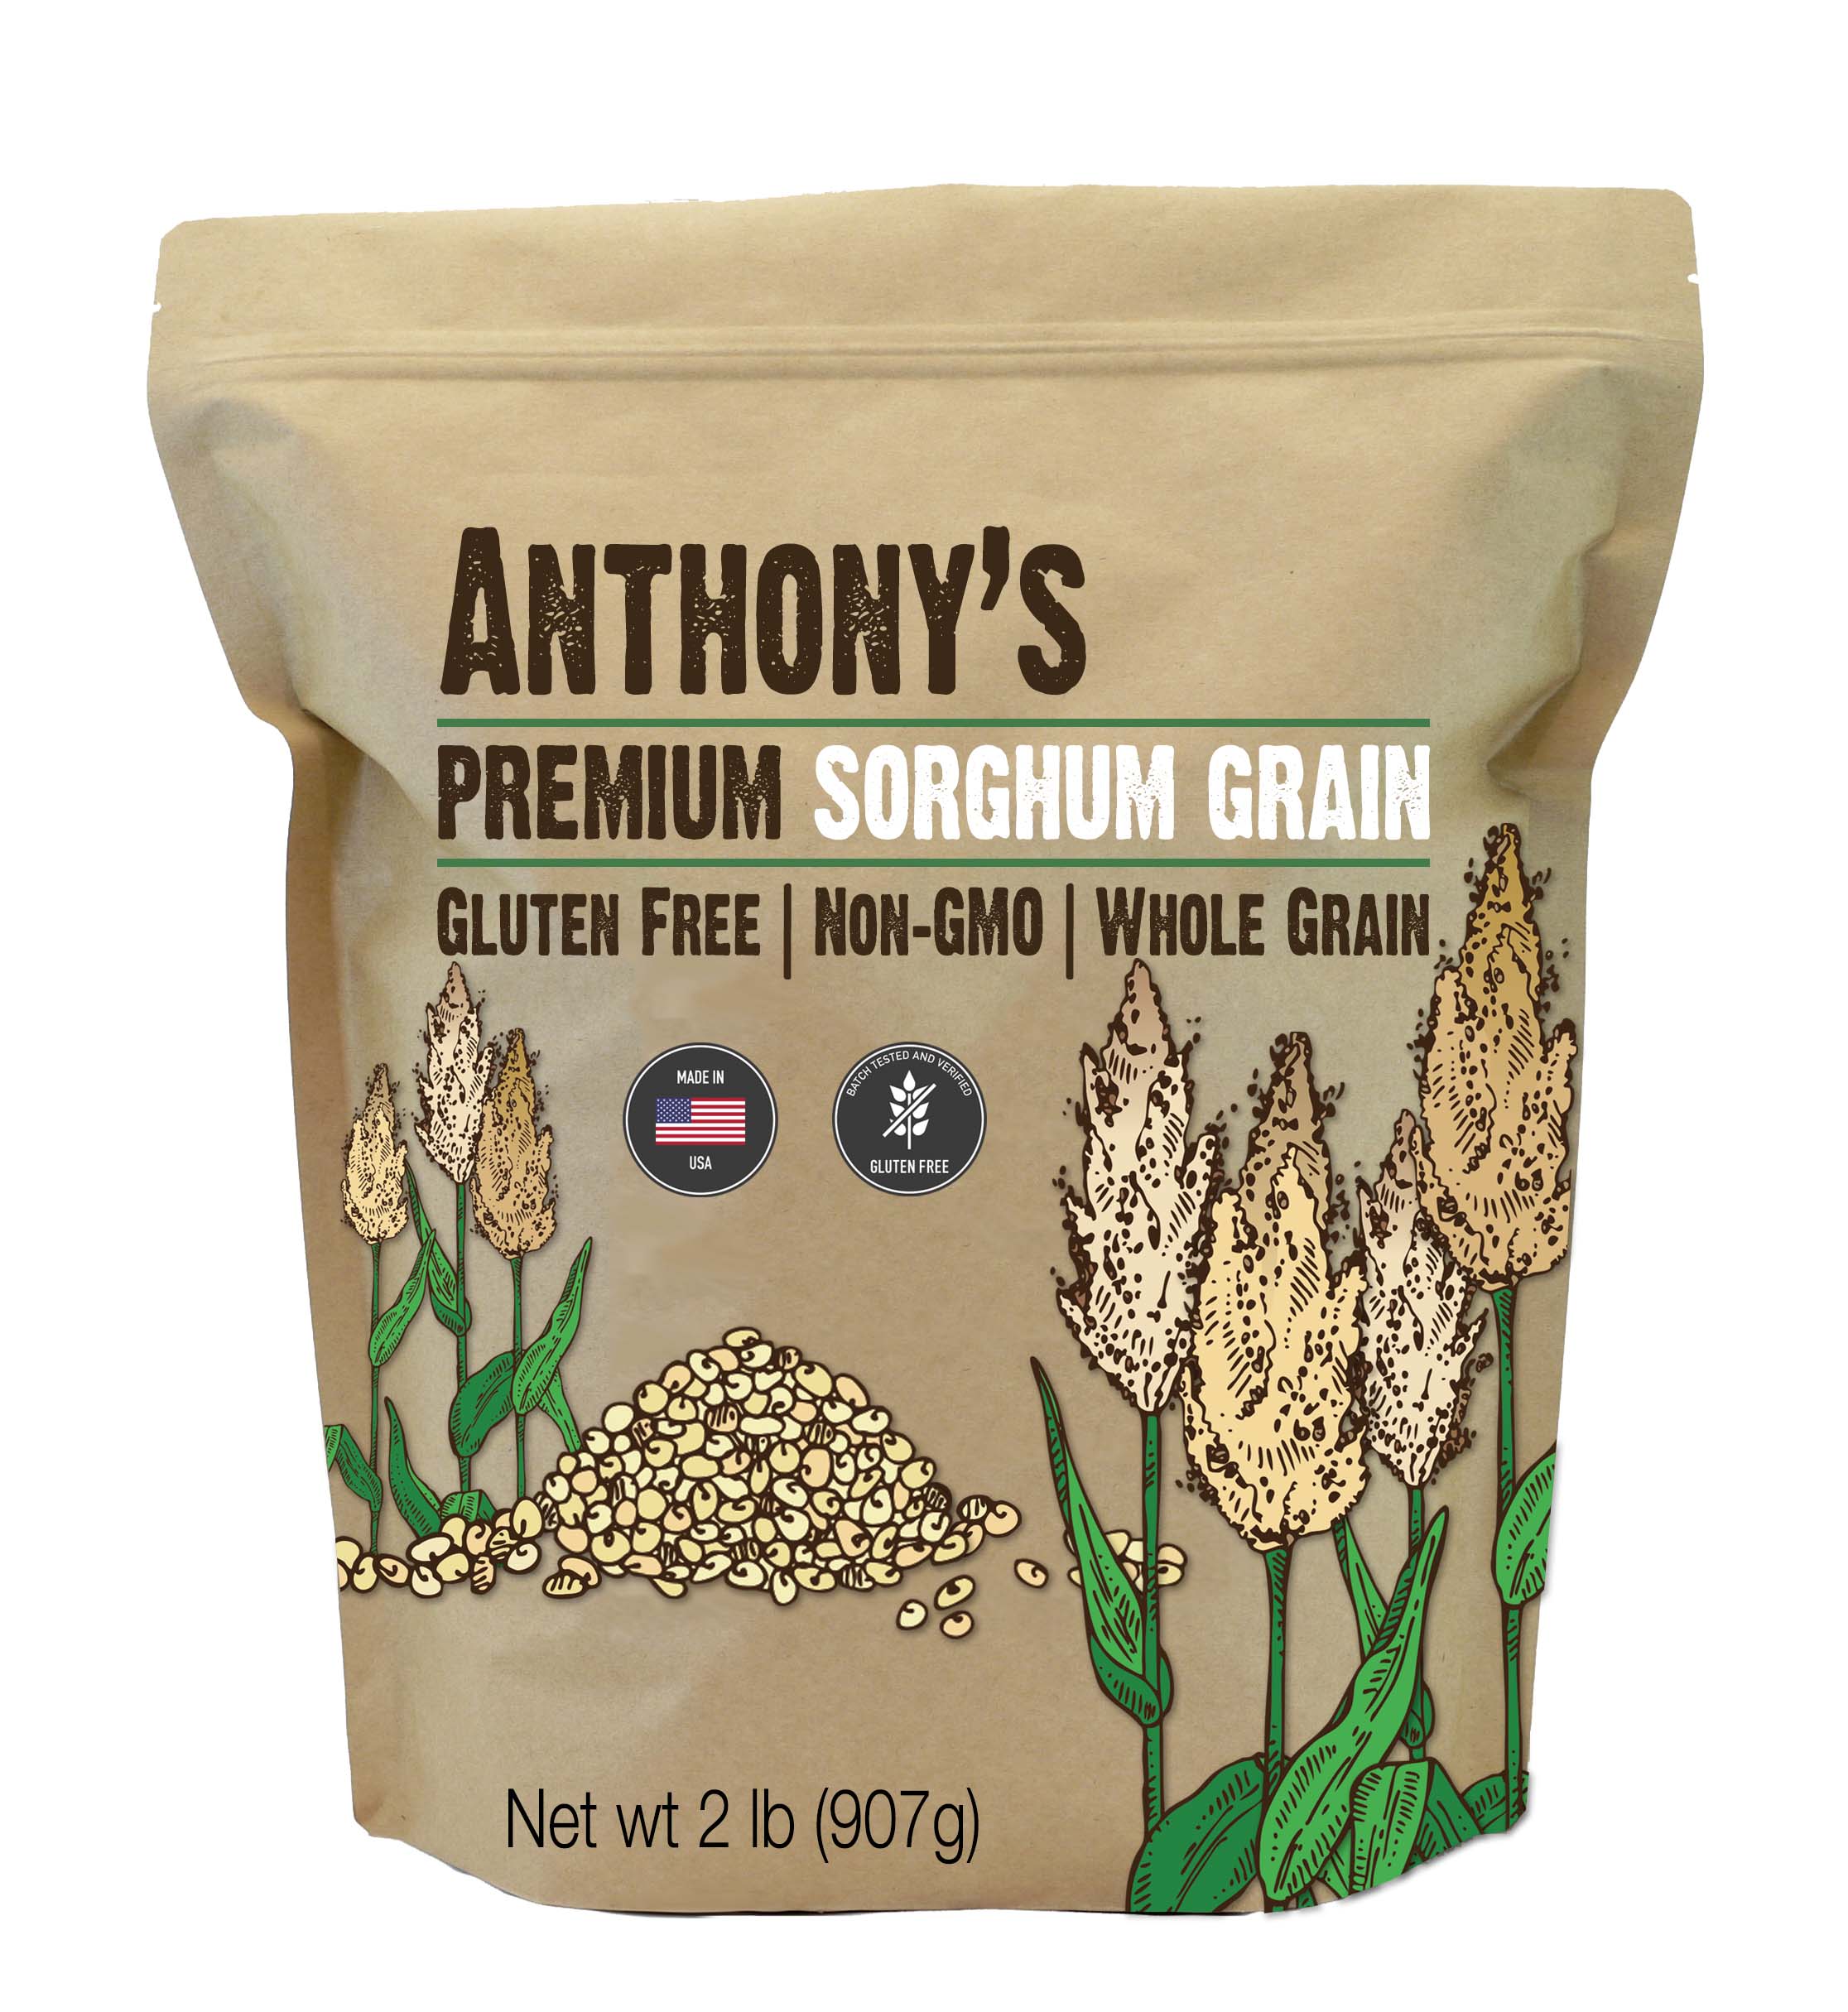 Sorghum Grain: Gluten Free & Non-GMO